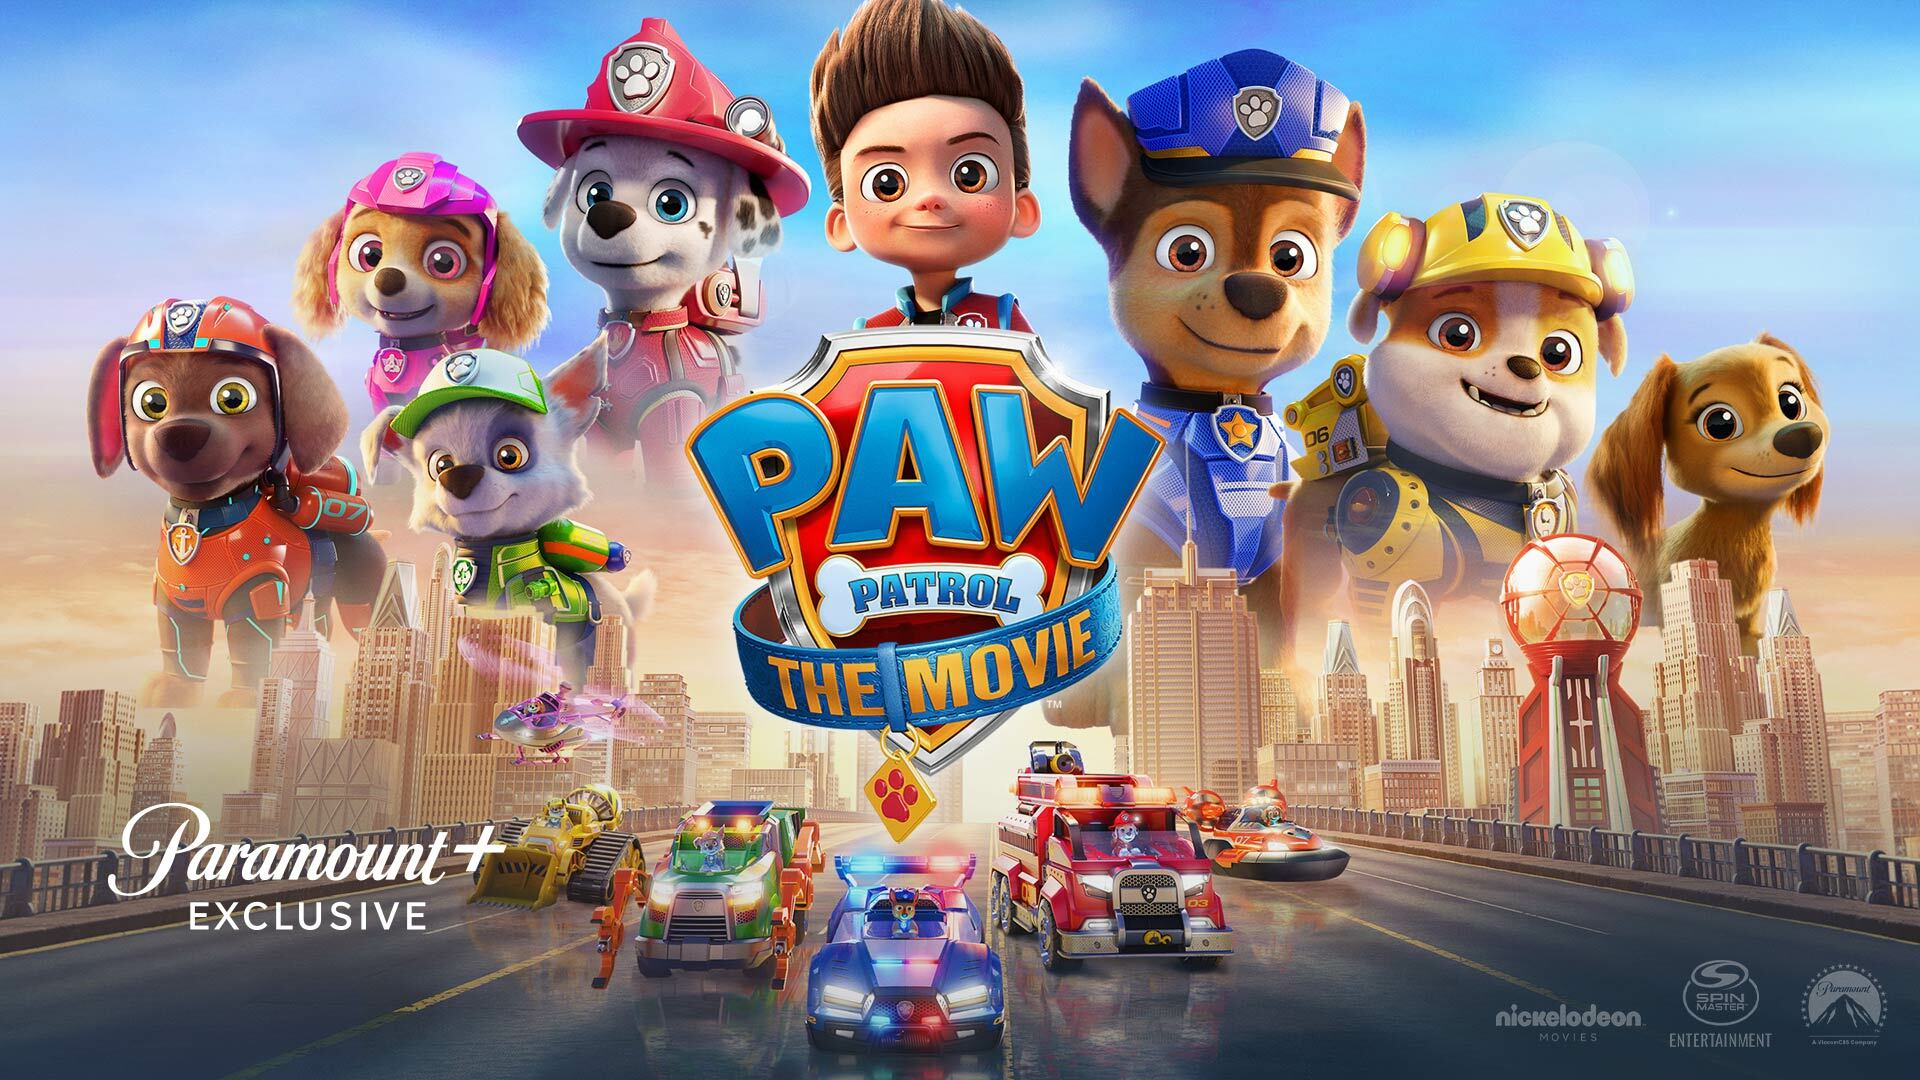 PAW Patrol: The Movie - Watch Full Movie on Paramount Plus